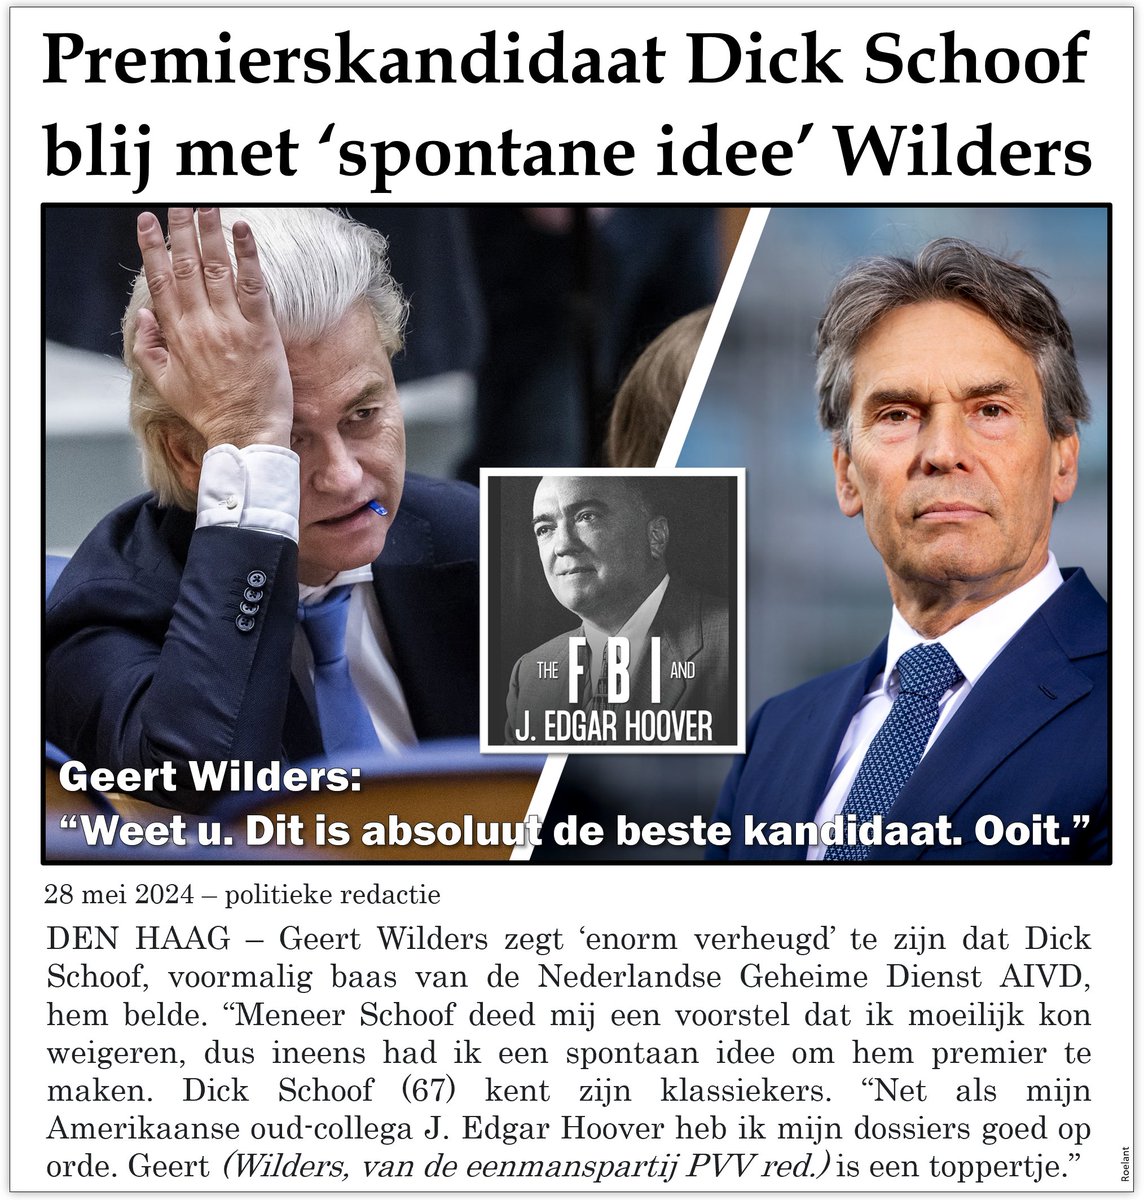 Premierskandidaat Dick Schoof blij met 'spontane idee' Wilders. Volgens de voormalig baas van de Nederlandse Geheime Dienst AIVD had Geert maar weinig bedenktijd nodig: 'Net als mijn Amerikaanse oud-collega J. Edgar Hoover heb ik mijn dossiers goed op orde.' aldus de premier.